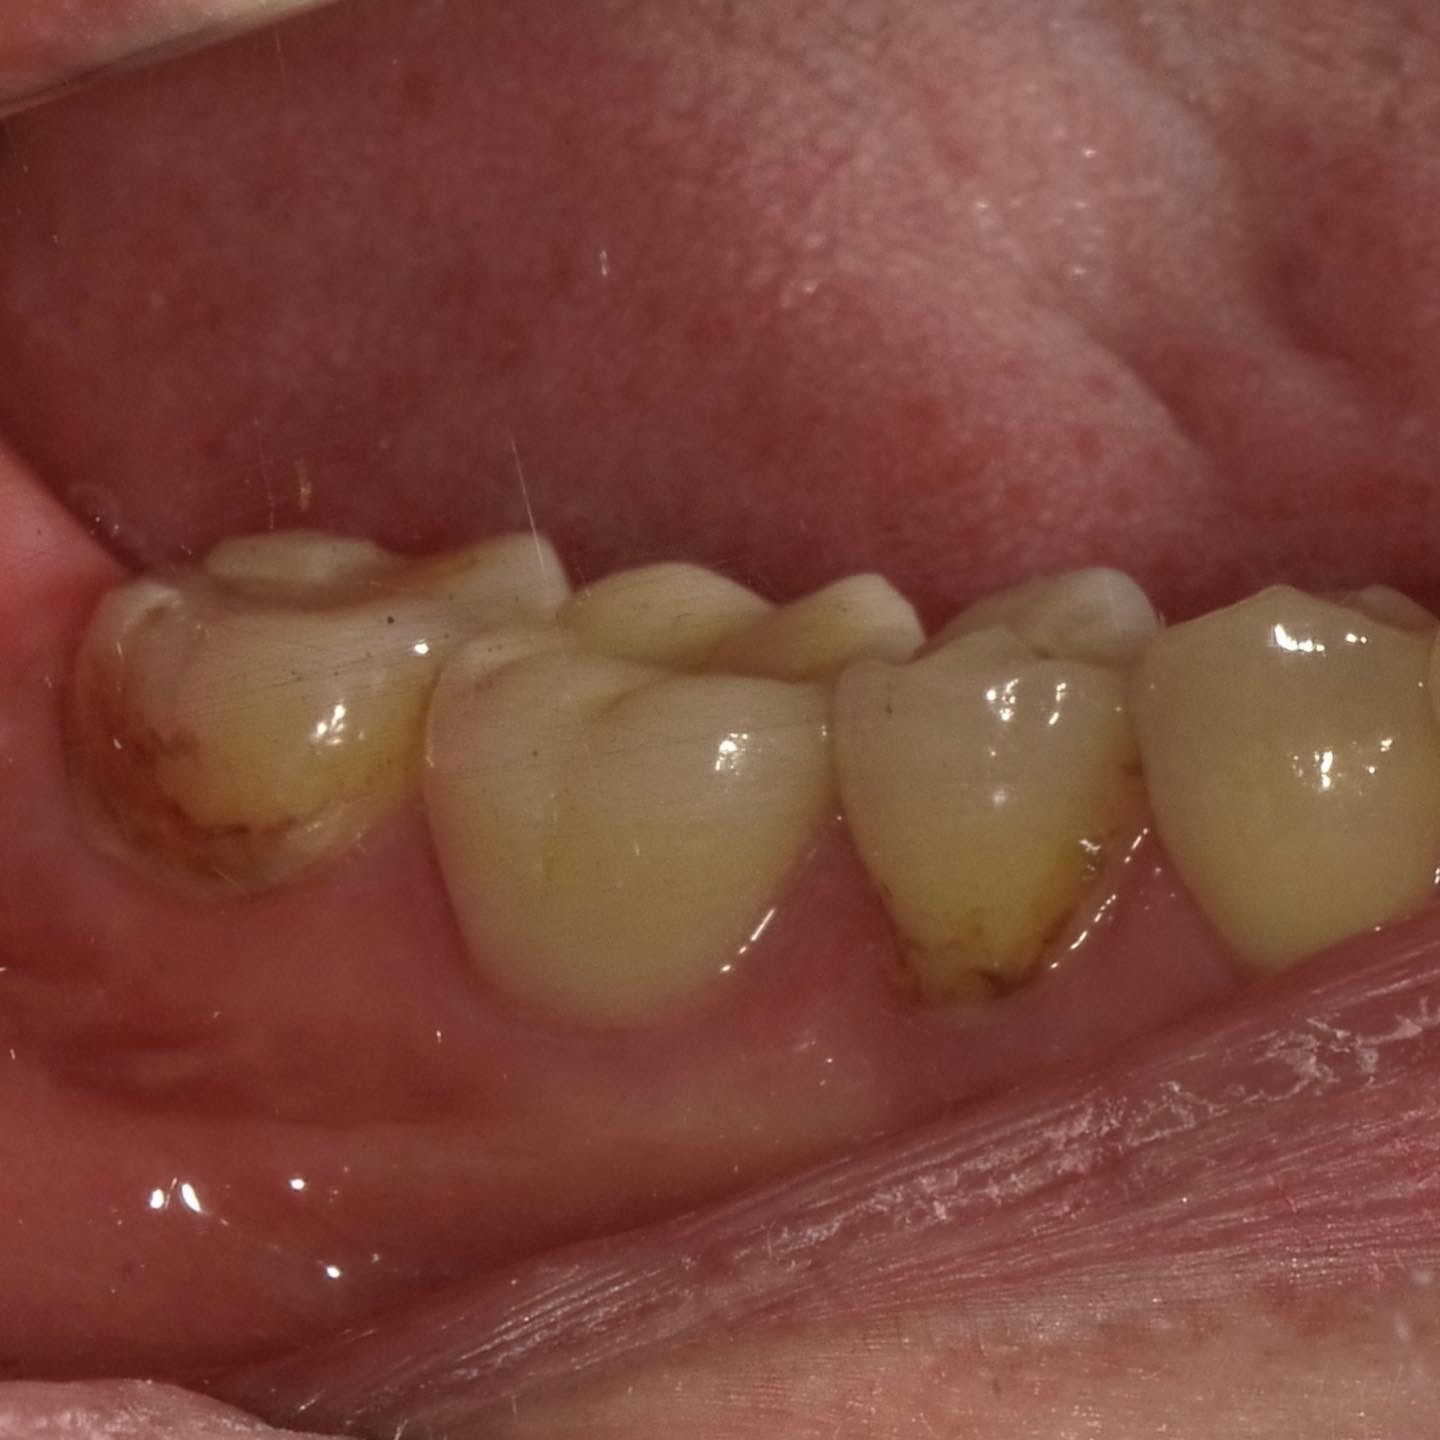 BTAテクニックで歯髄と歯周組織を長期的に守る